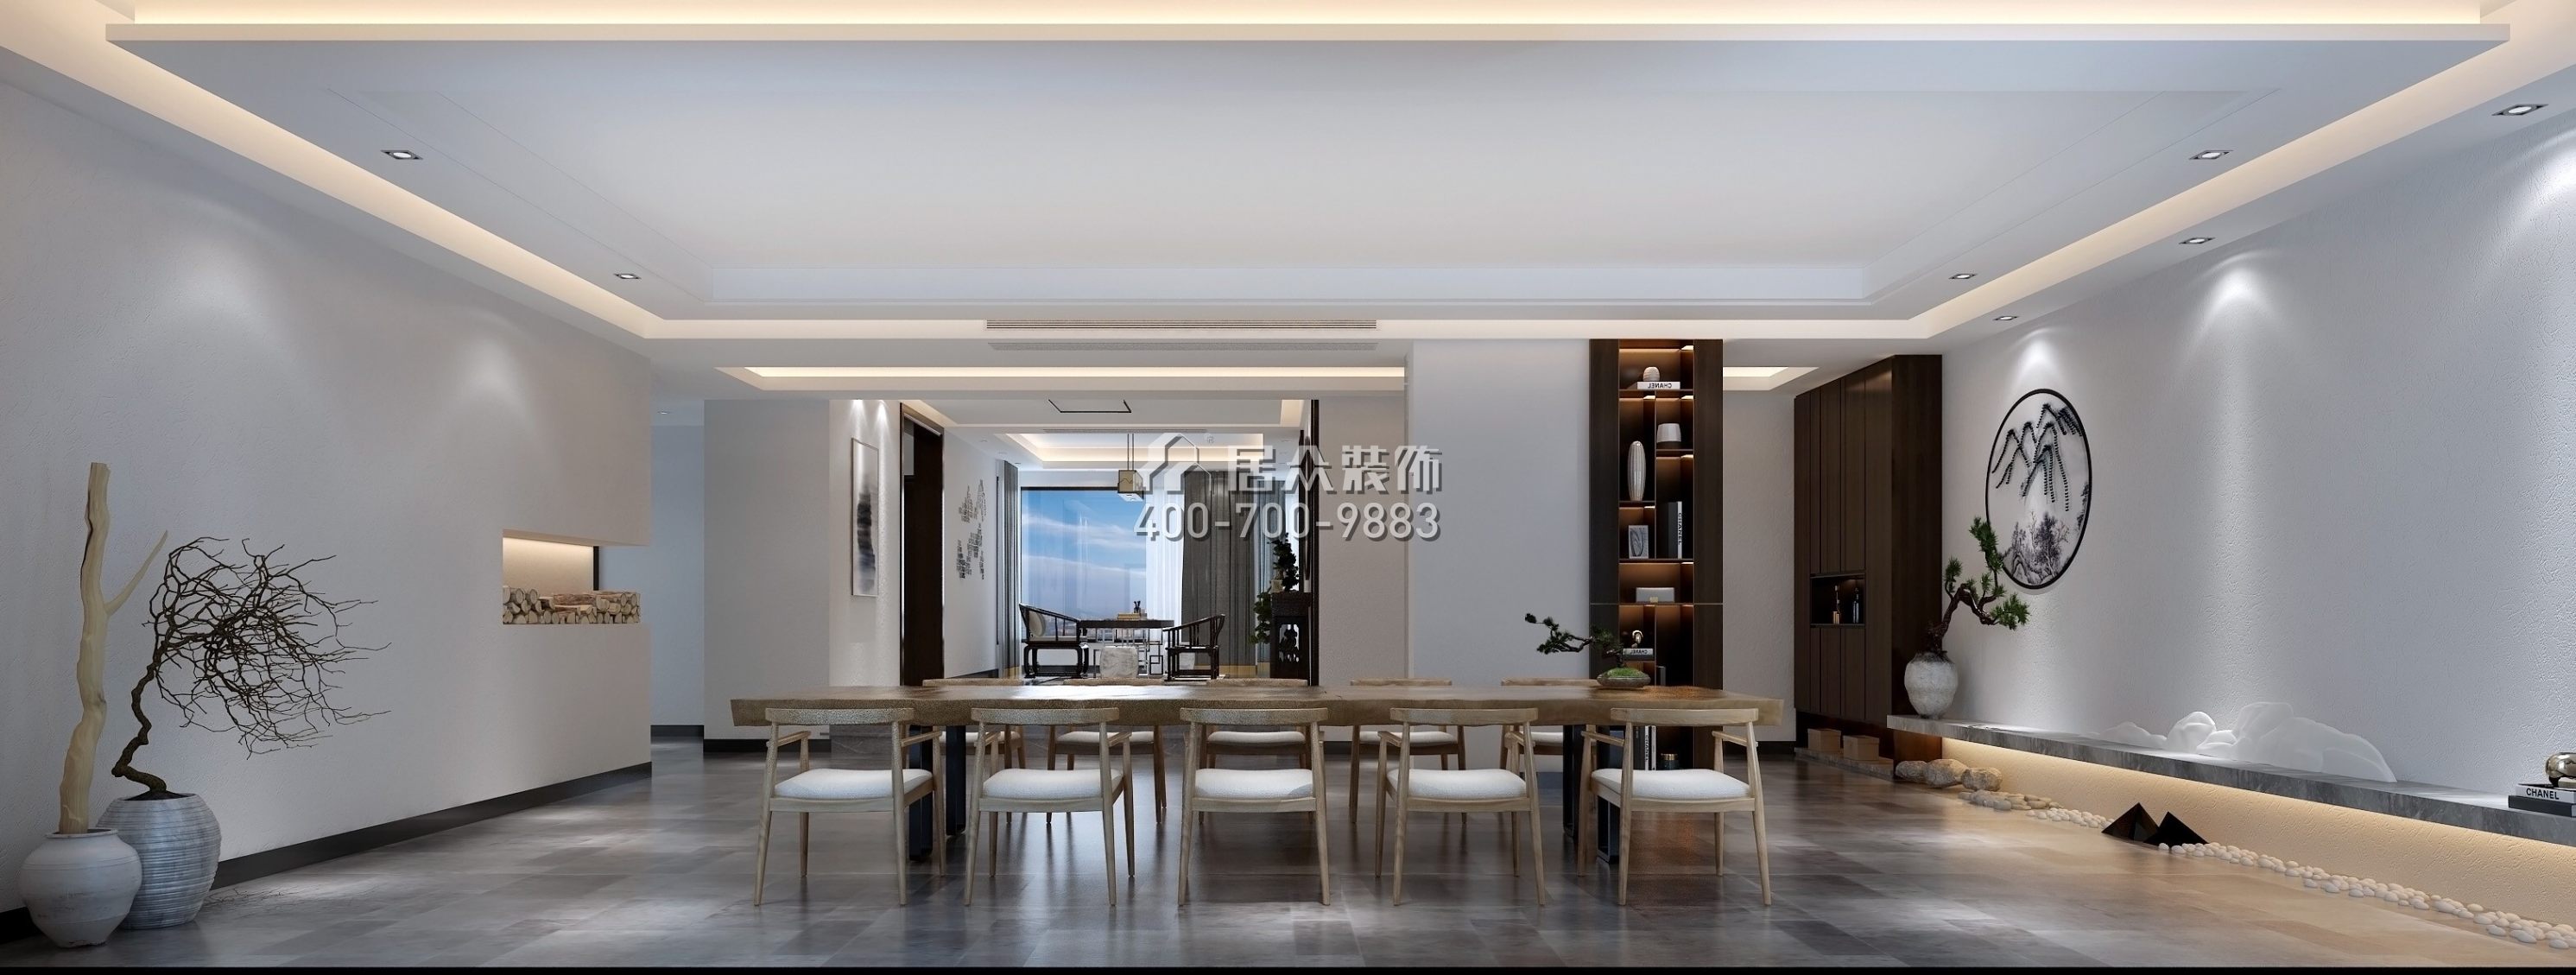 锦绣山河三期190平方米混搭风格平层户型餐厅装修效果图